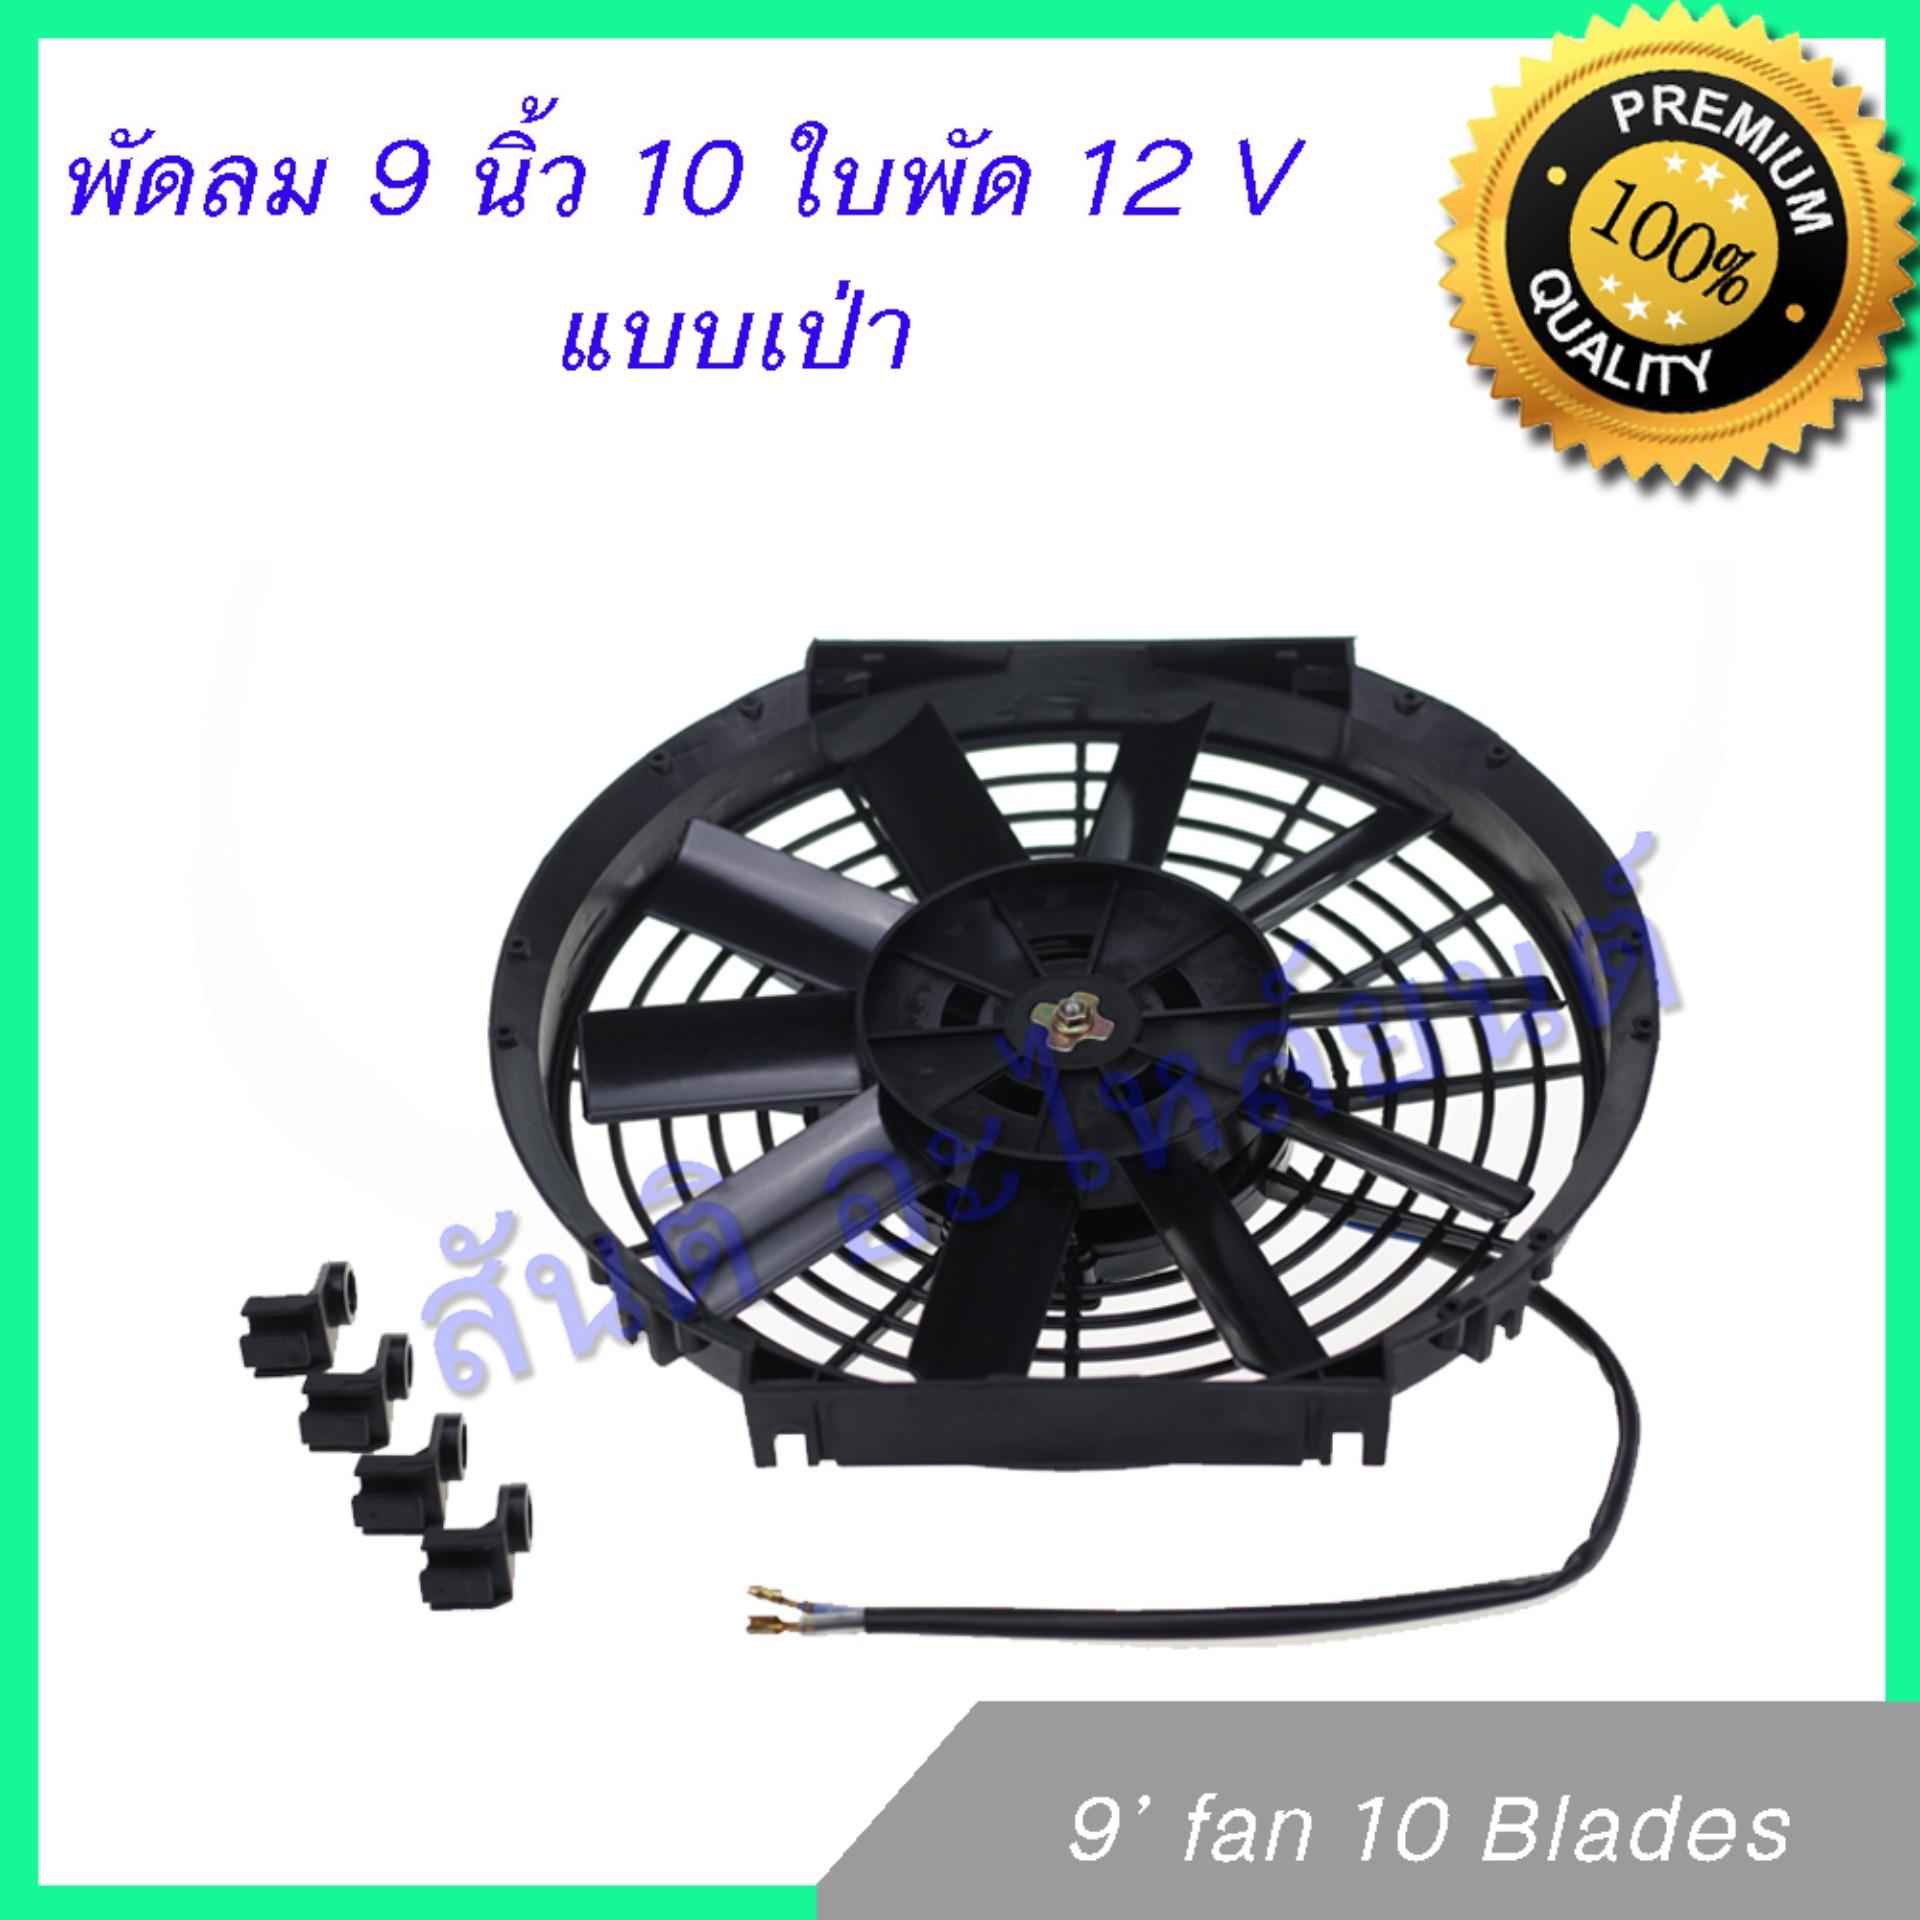 พัดลม 9 นิ้ว 10 ใบ 12V พัดลมหม้อน้ำ พัดลมแผงร้อน Fan 9 inch 10 blades condenser Radiator fan